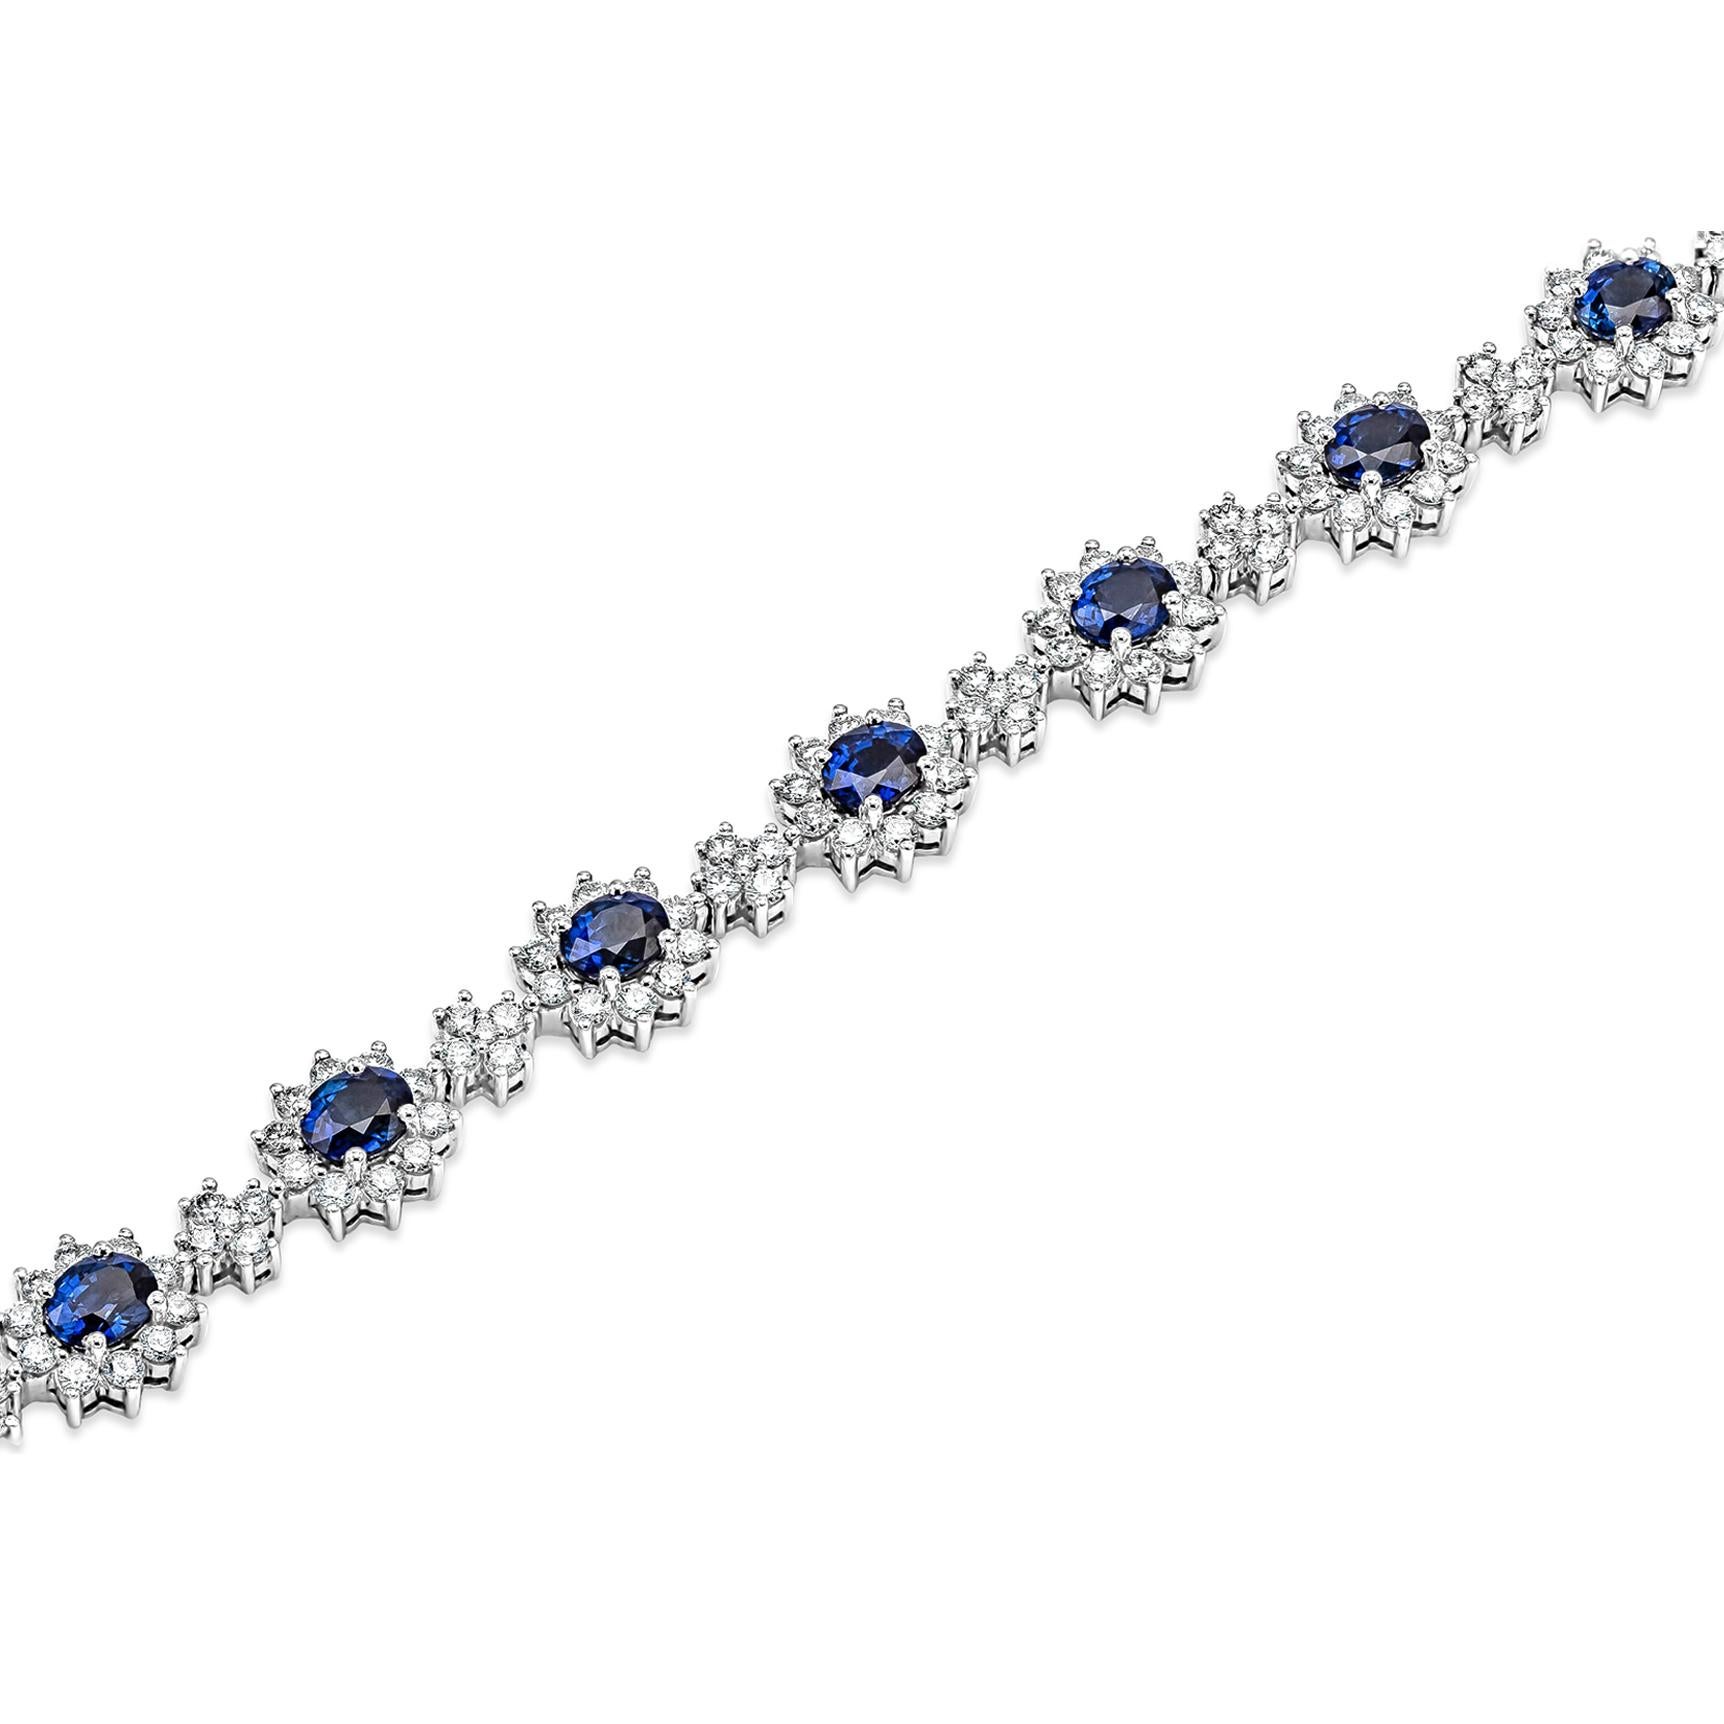 Ajoutez de la couleur à votre style avec ce magnifique bracelet fleur en saphir. Elle comprend 12 saphirs bleus de taille ovale entourés d'une rangée de diamants ronds étincelants dans une monture à motif floral. Chaque fleur de saphir est espacée